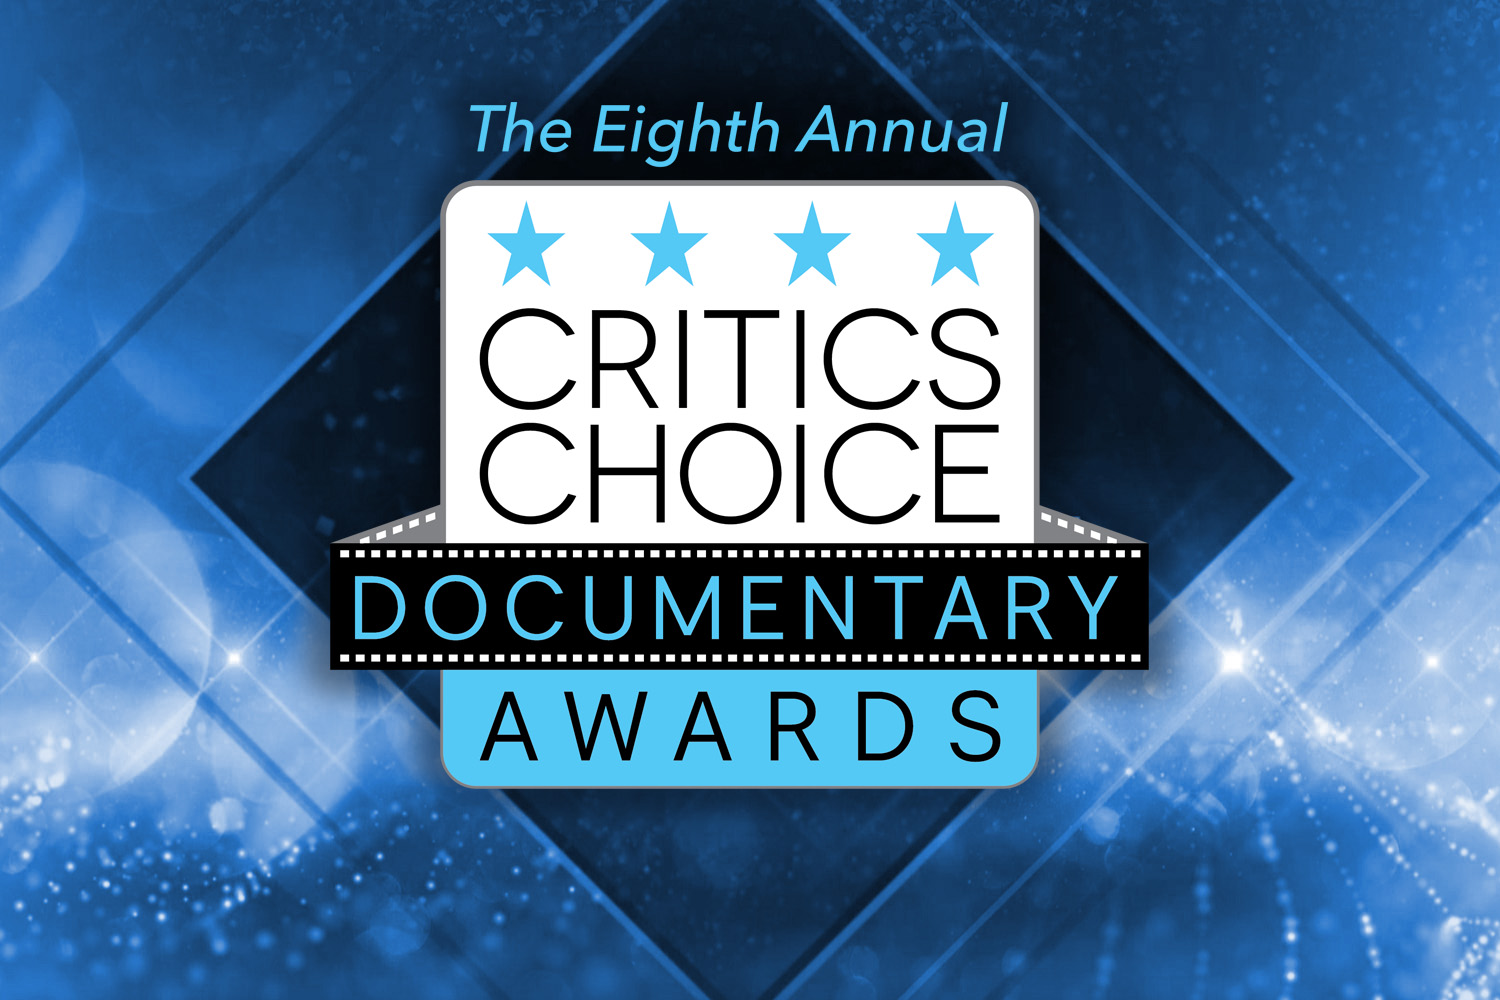 Critics Choice Documentary Awards: Eighth Annual Winners